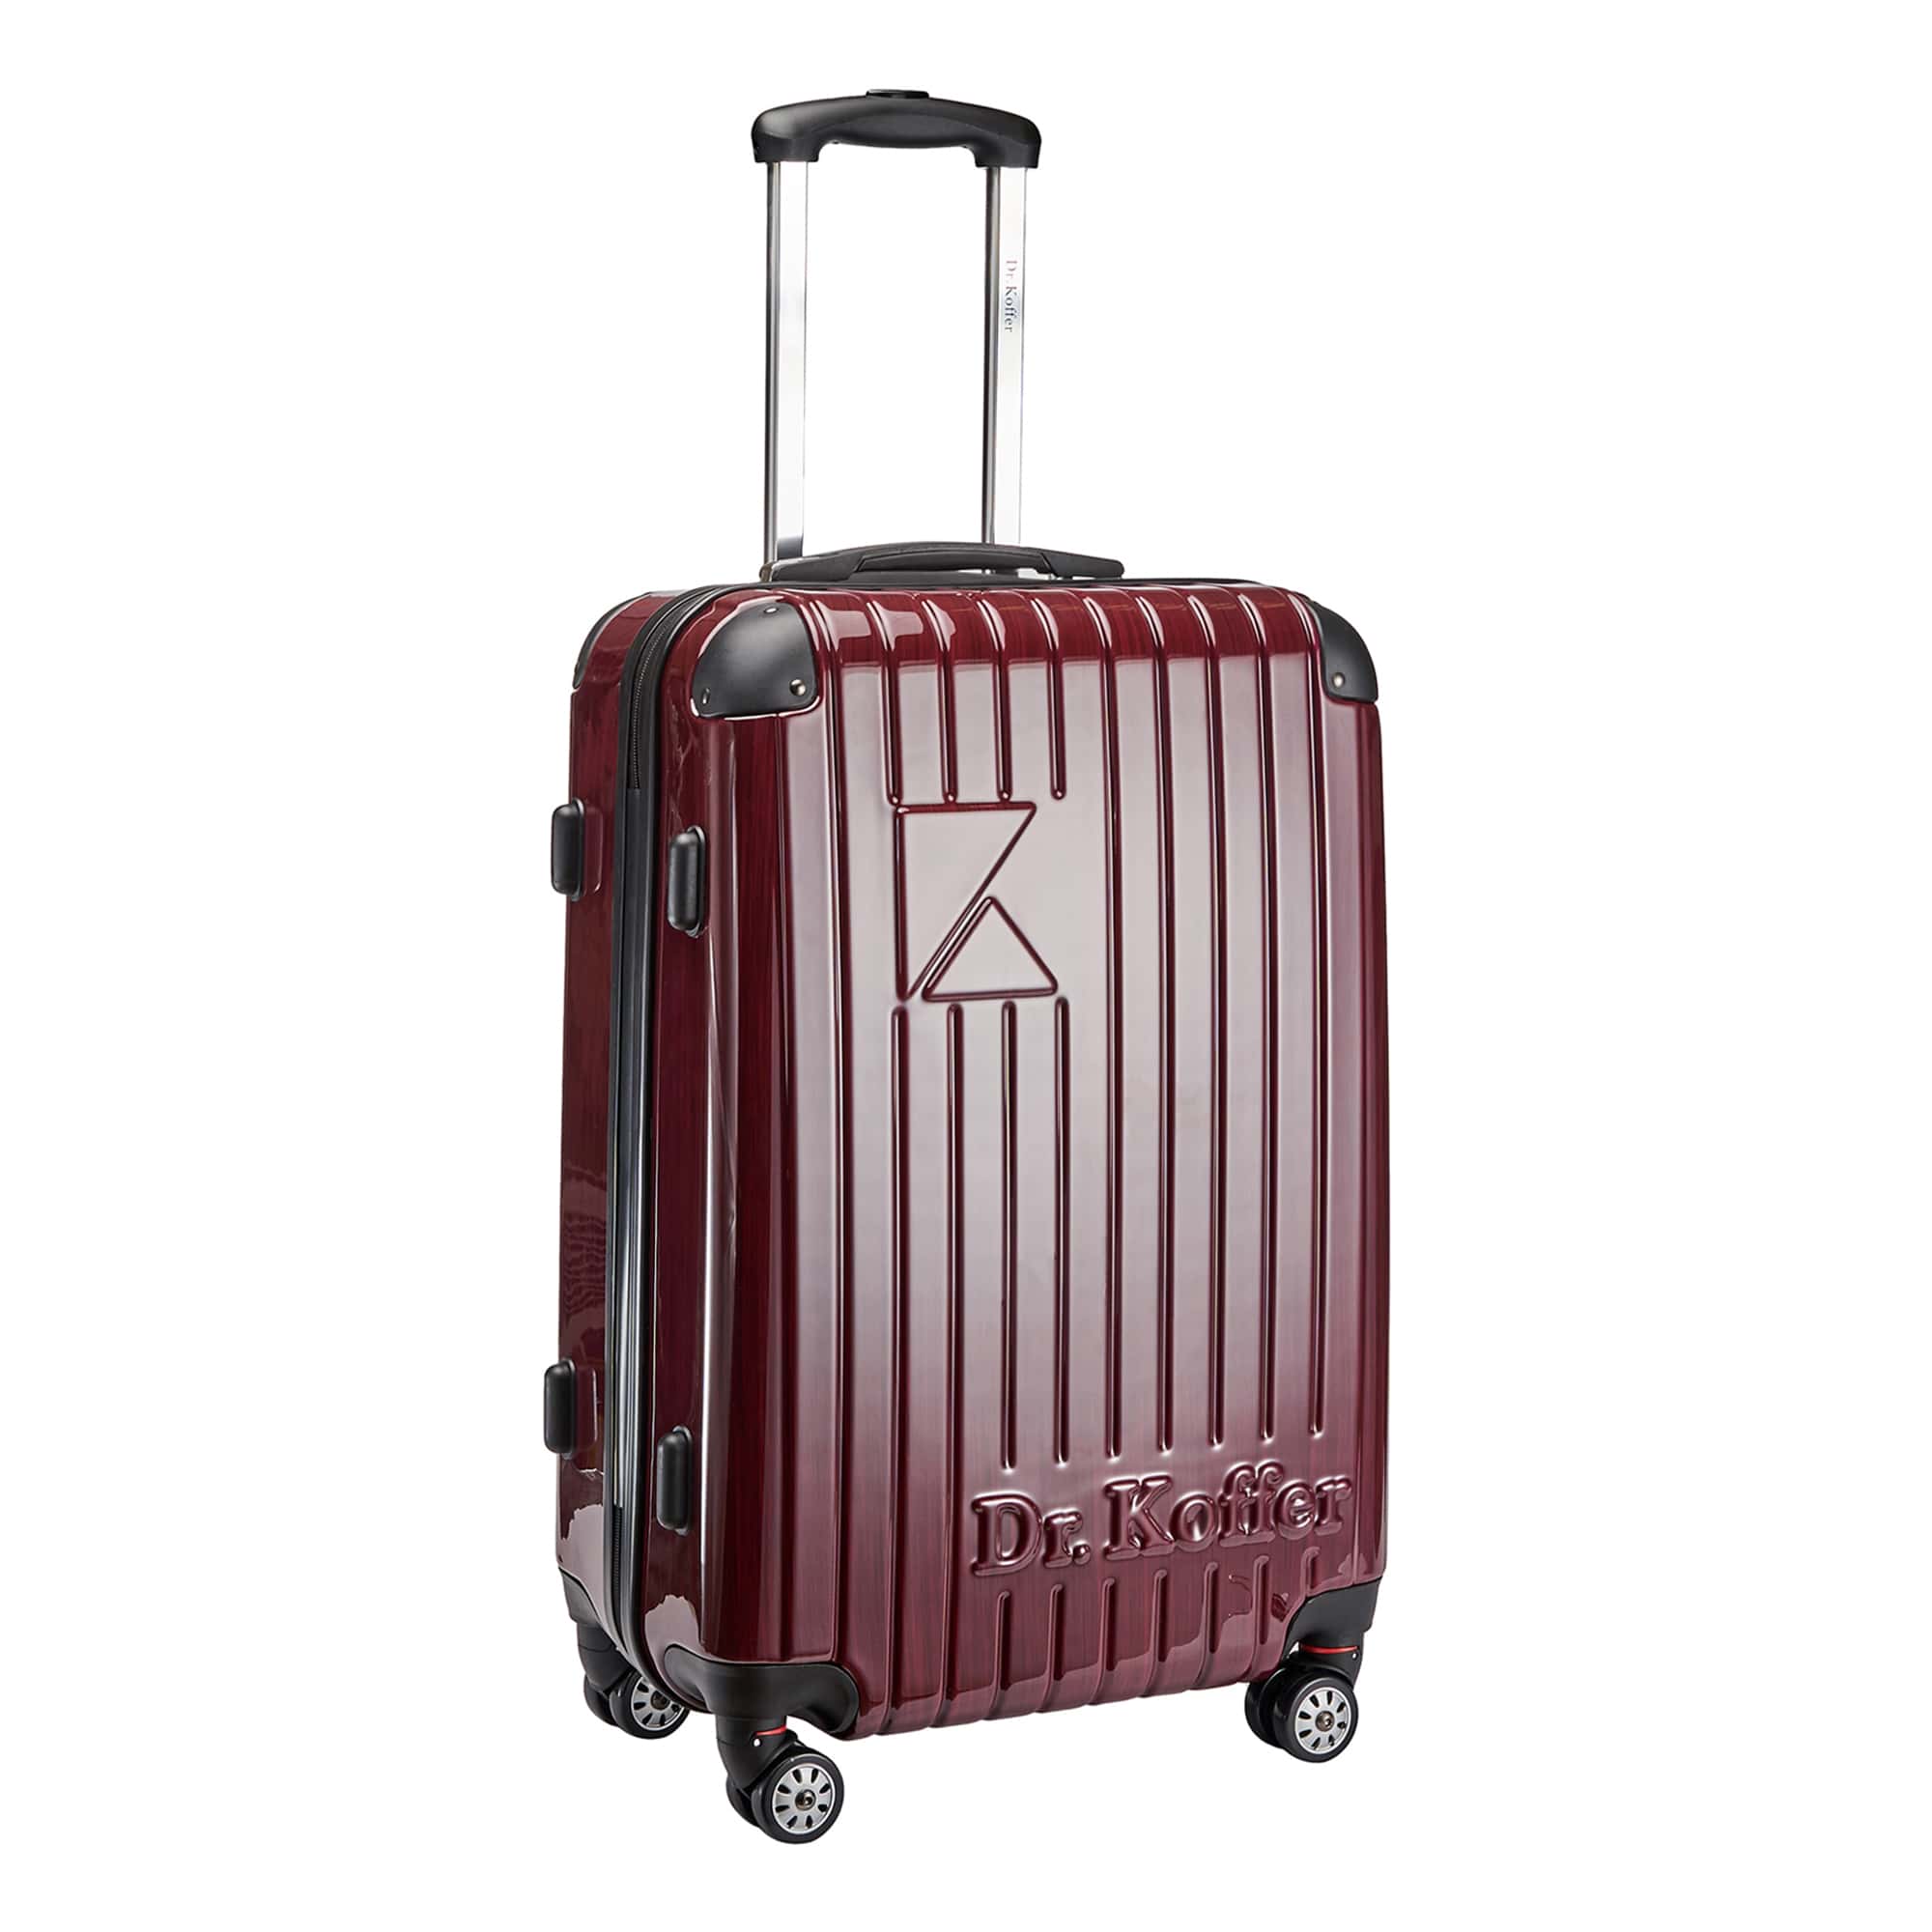 Др.Коффер L102TC24-250-12 чемодан, цвет красный - фото 1